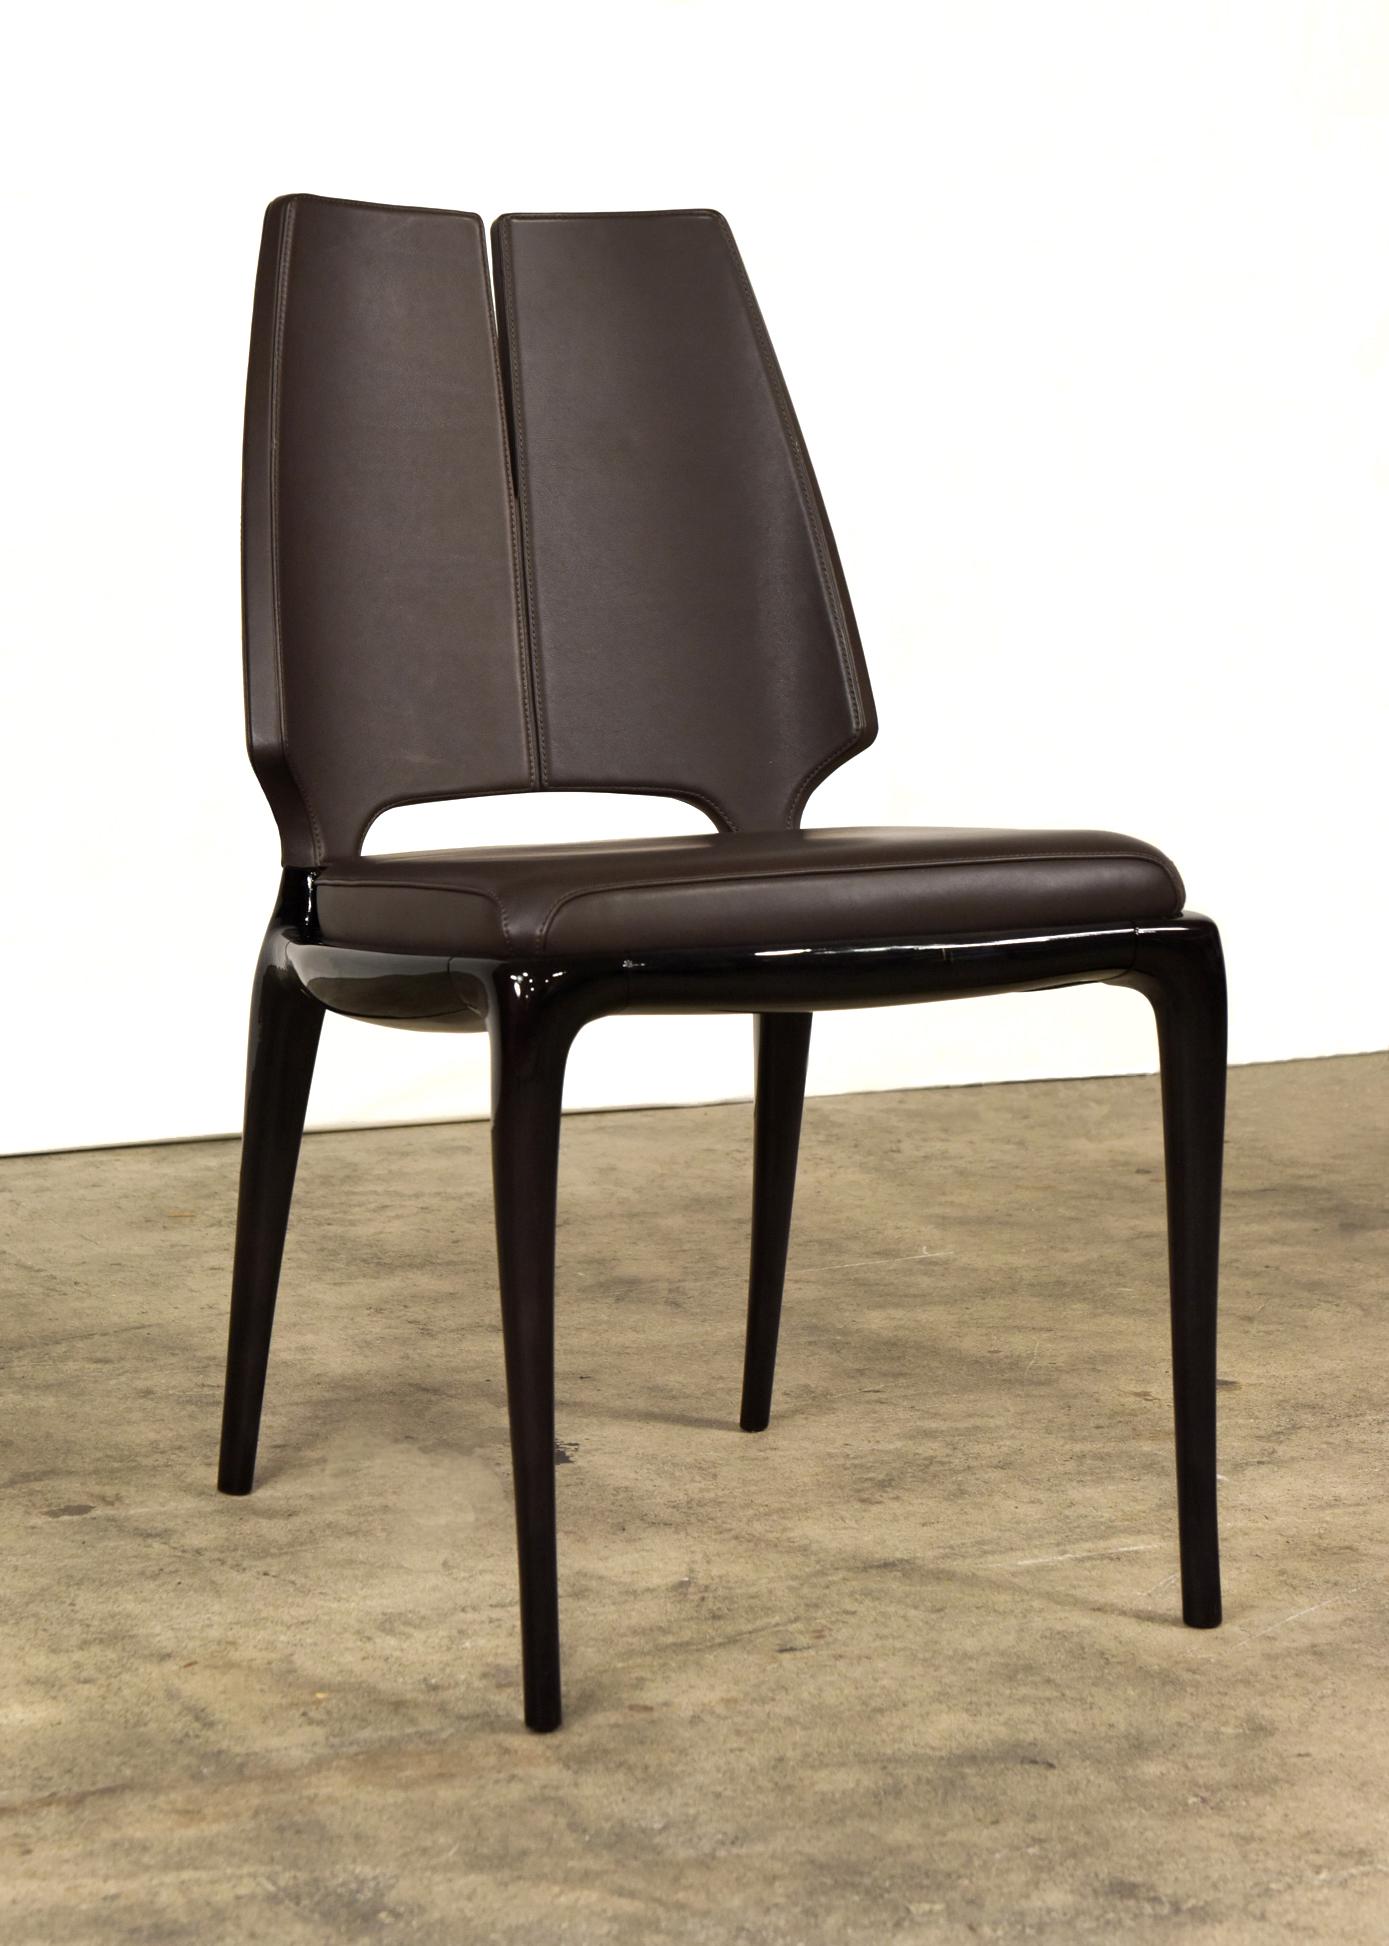 Der schlanke und raffinierte Stuhl Contour mit Armlehnen vereint auf brillante Weise einen nüchternen Geist mit
zeitgenössischer Geschmack. Er ist aus dunkel lackiertem Holz gefertigt und beherbergt den Sitz aus lavafarbenem Leder
kissen, das mit